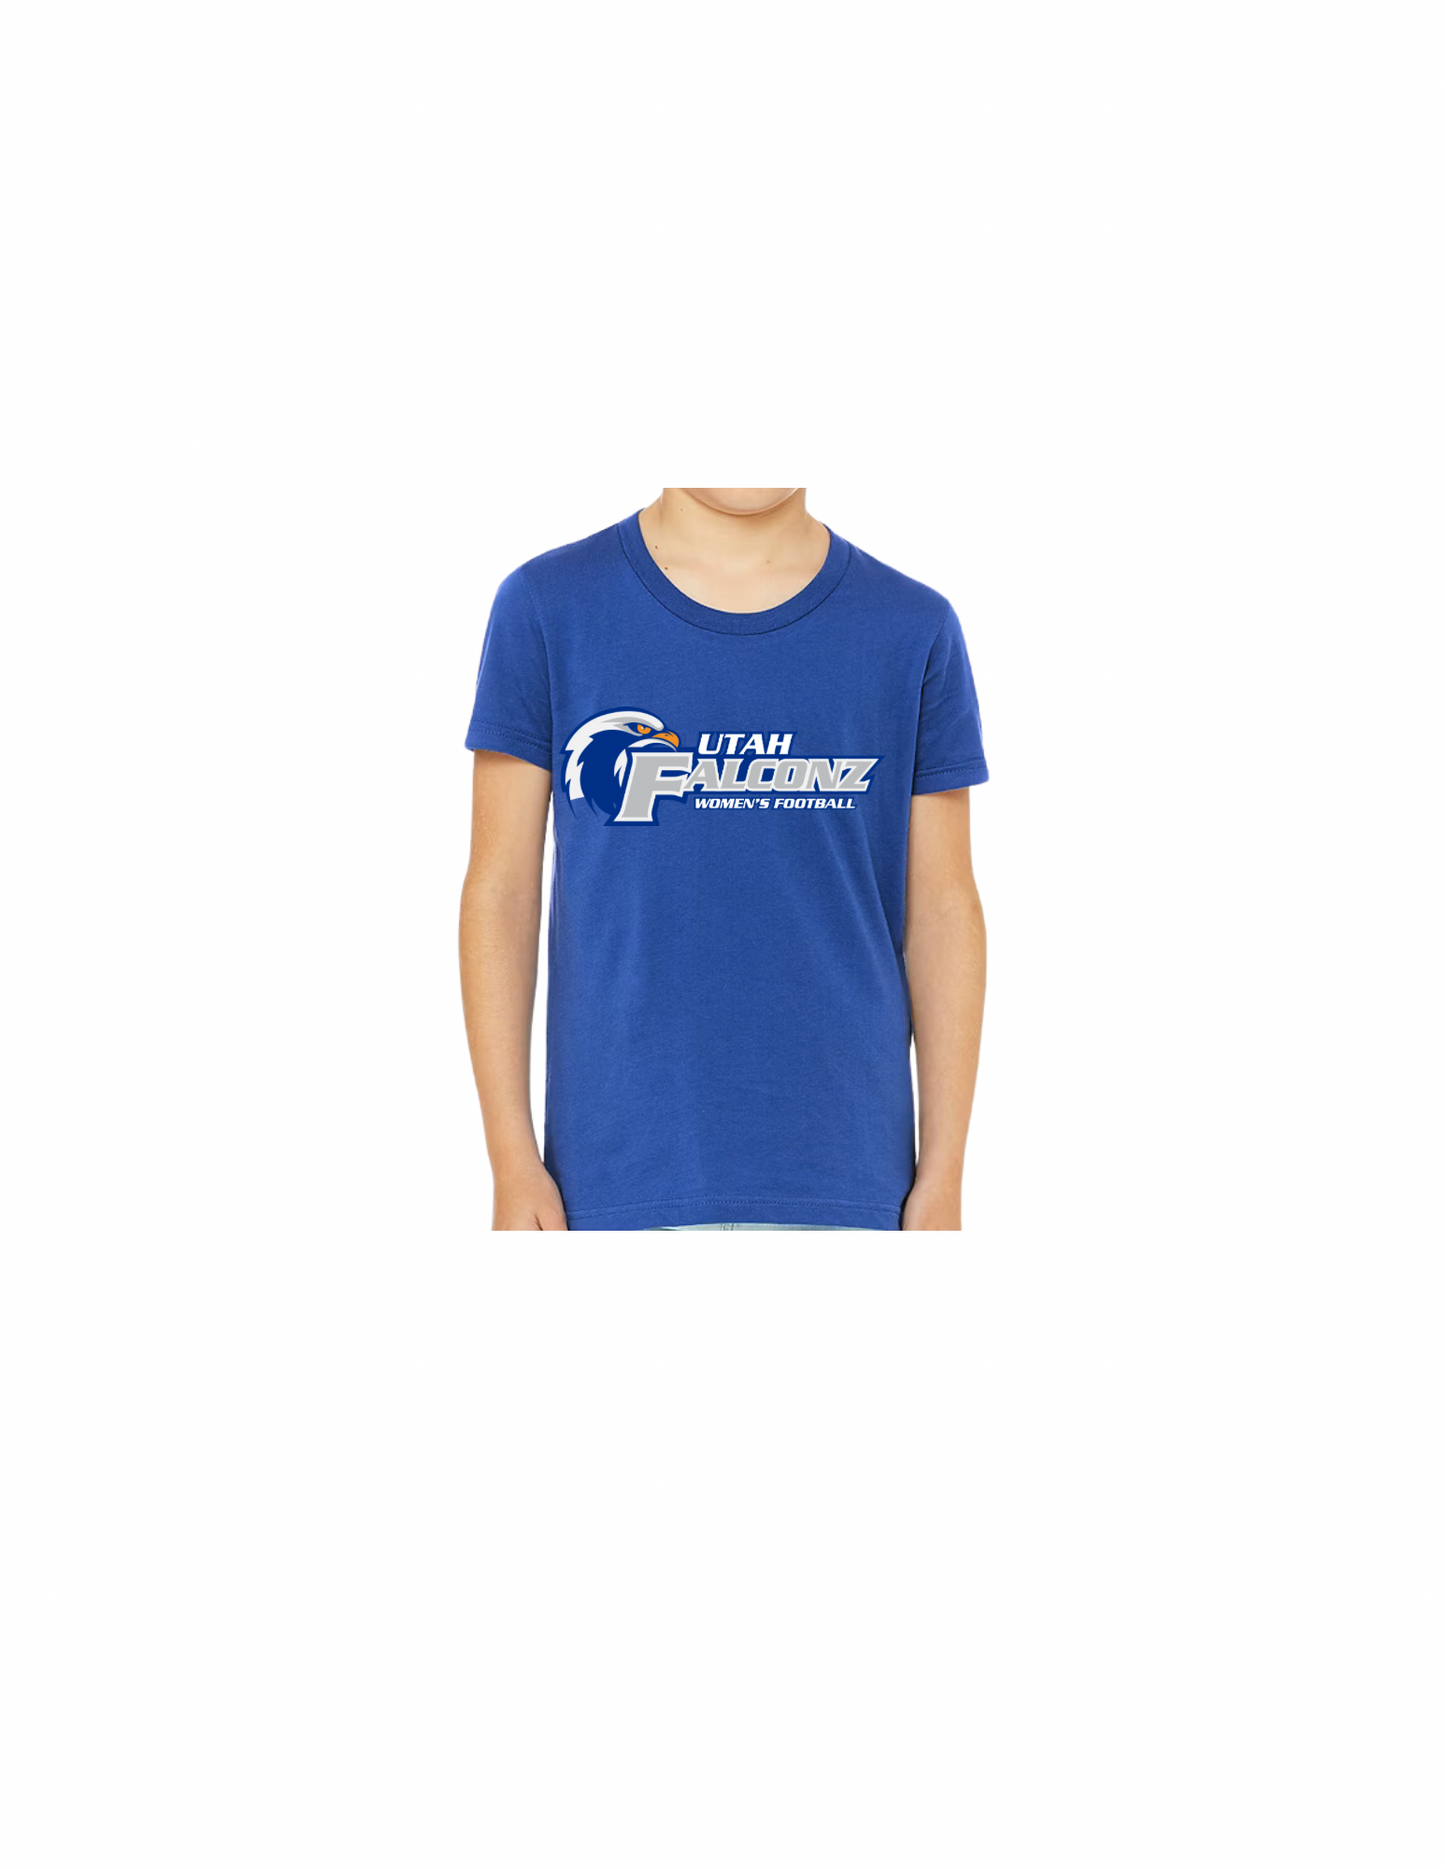 Youth Utah Falconz T-Shirt